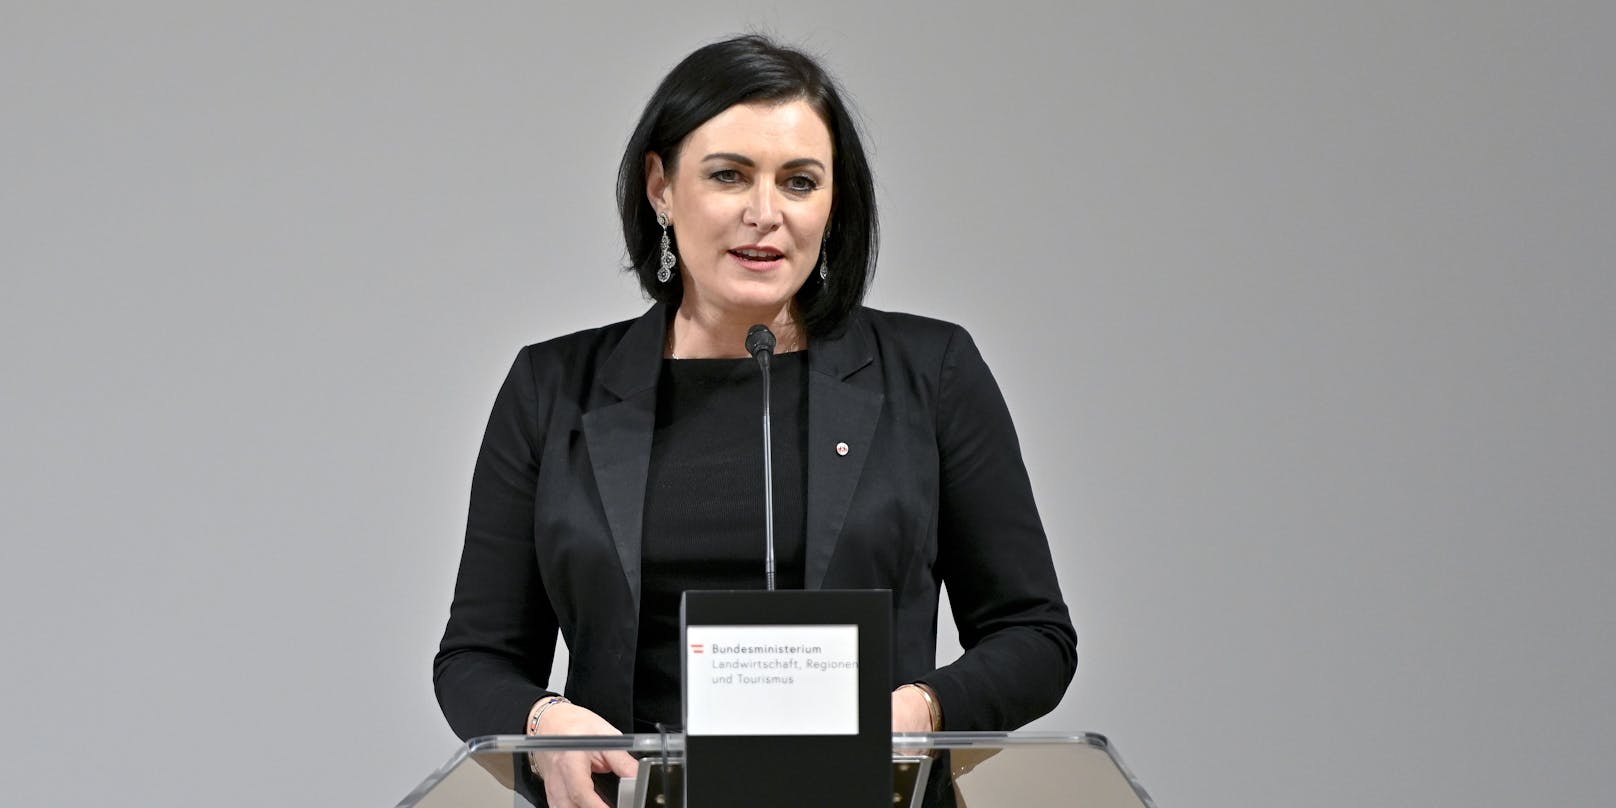 Elisabeth Köstinger (ÖVP): Bundesministerin für Landwirtschaft, Regionen und Tourismus, das Postwesen, Telekommunikation und den Zivildienst